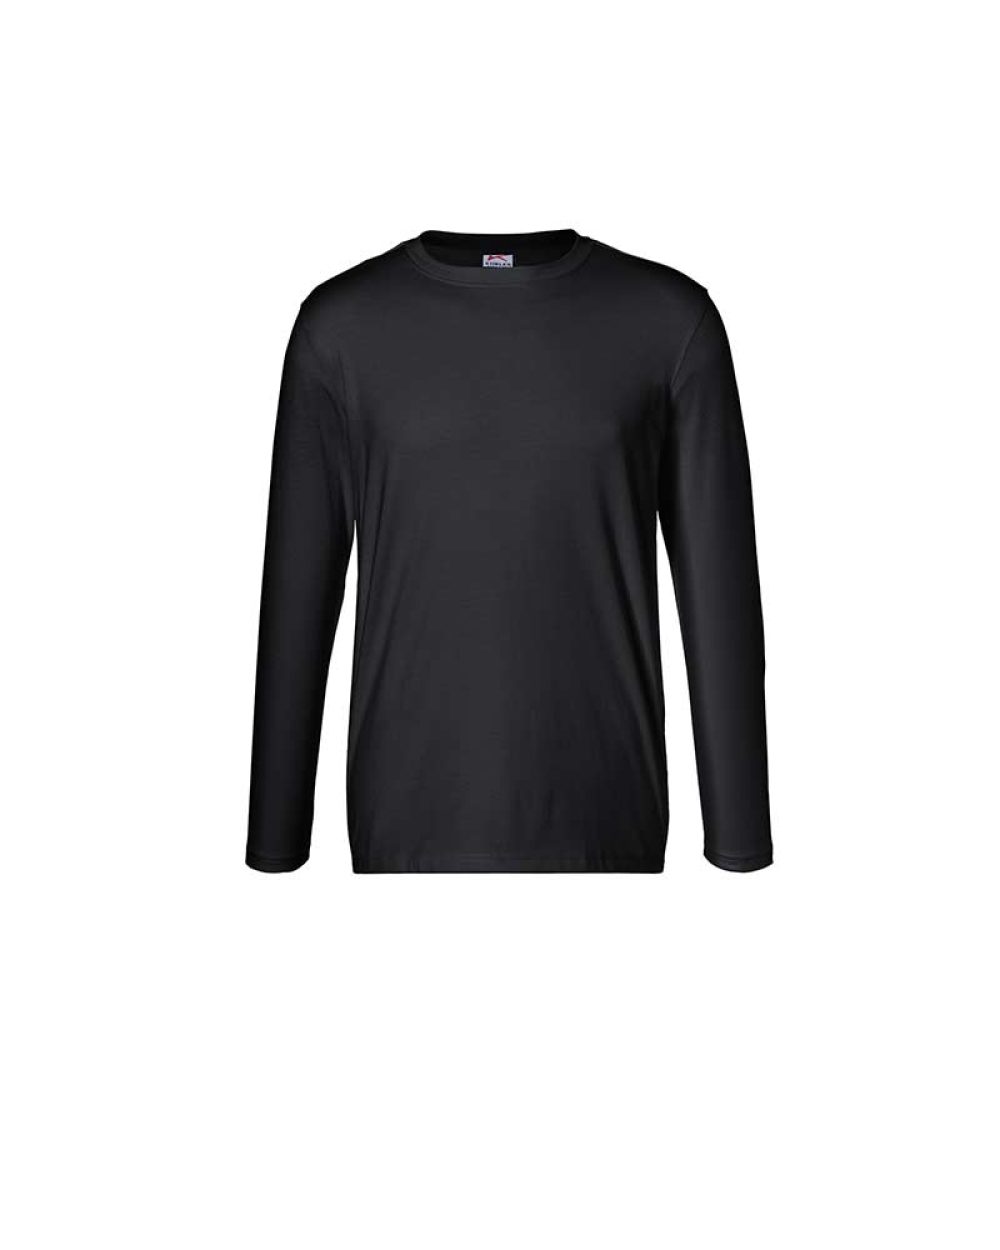 kuebler-langarm-t-shirt-shirts-5025-6240-99